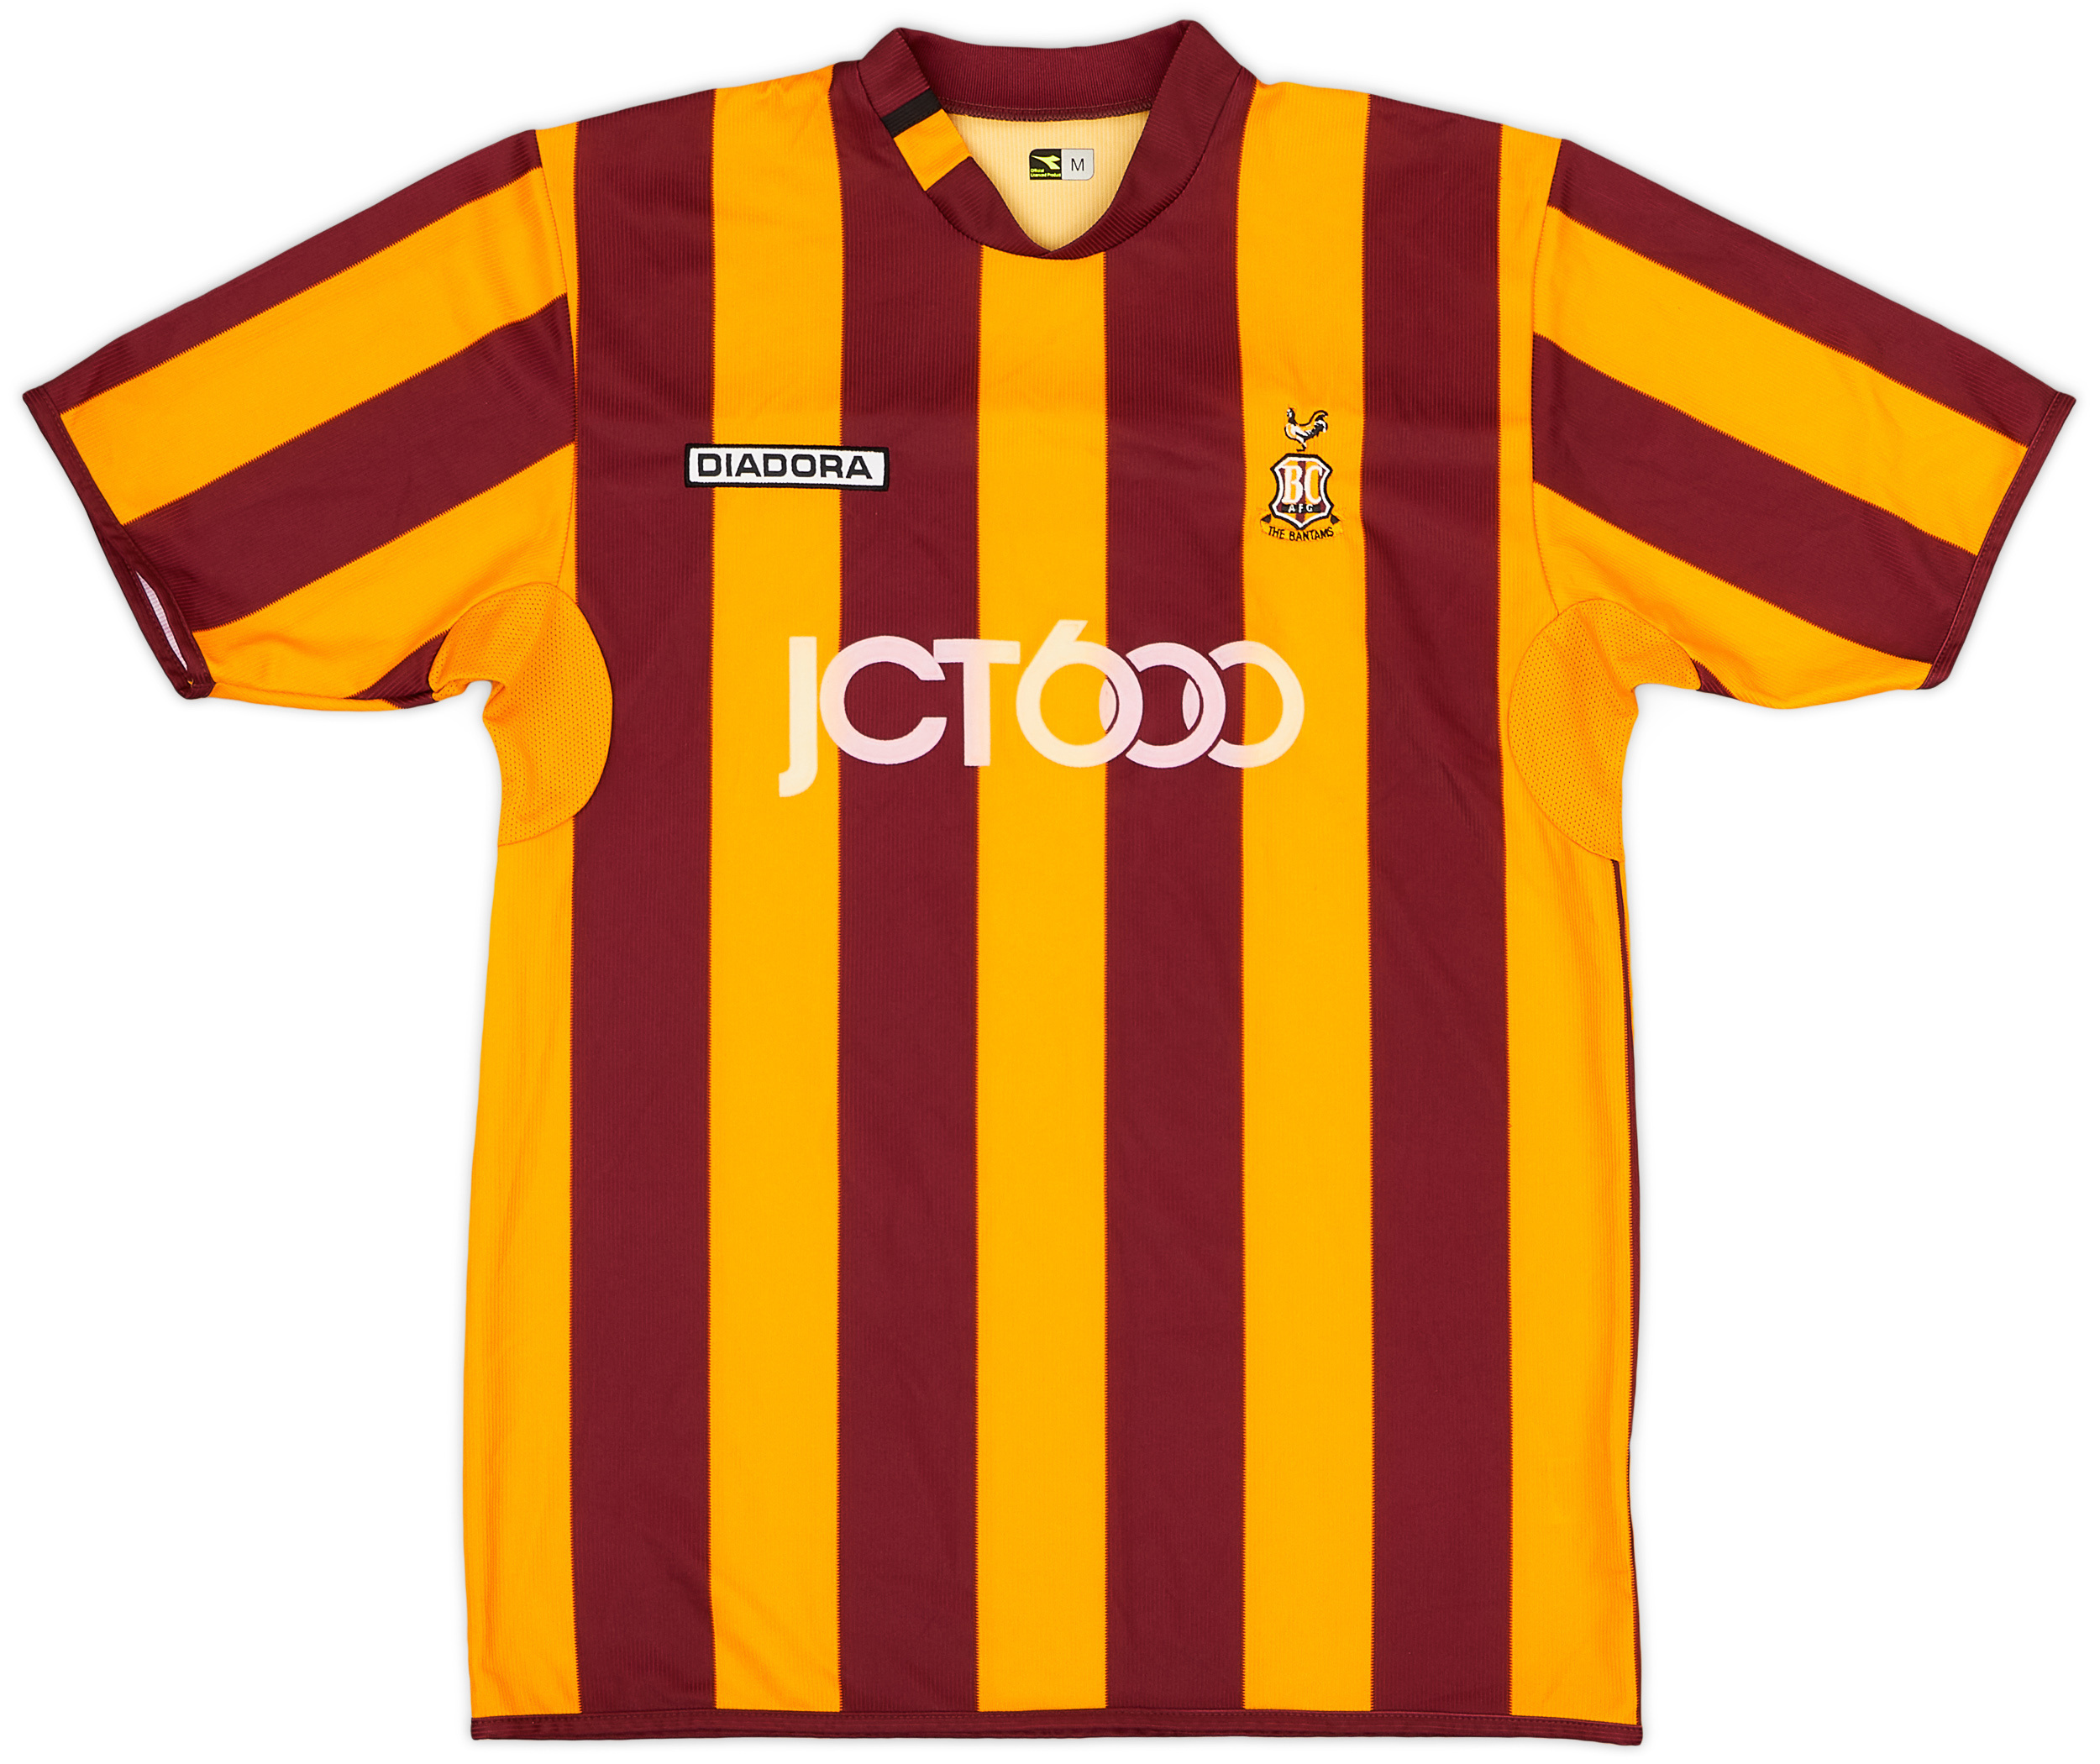 2004 Bradford City Home Shirt - 8/10 - ()